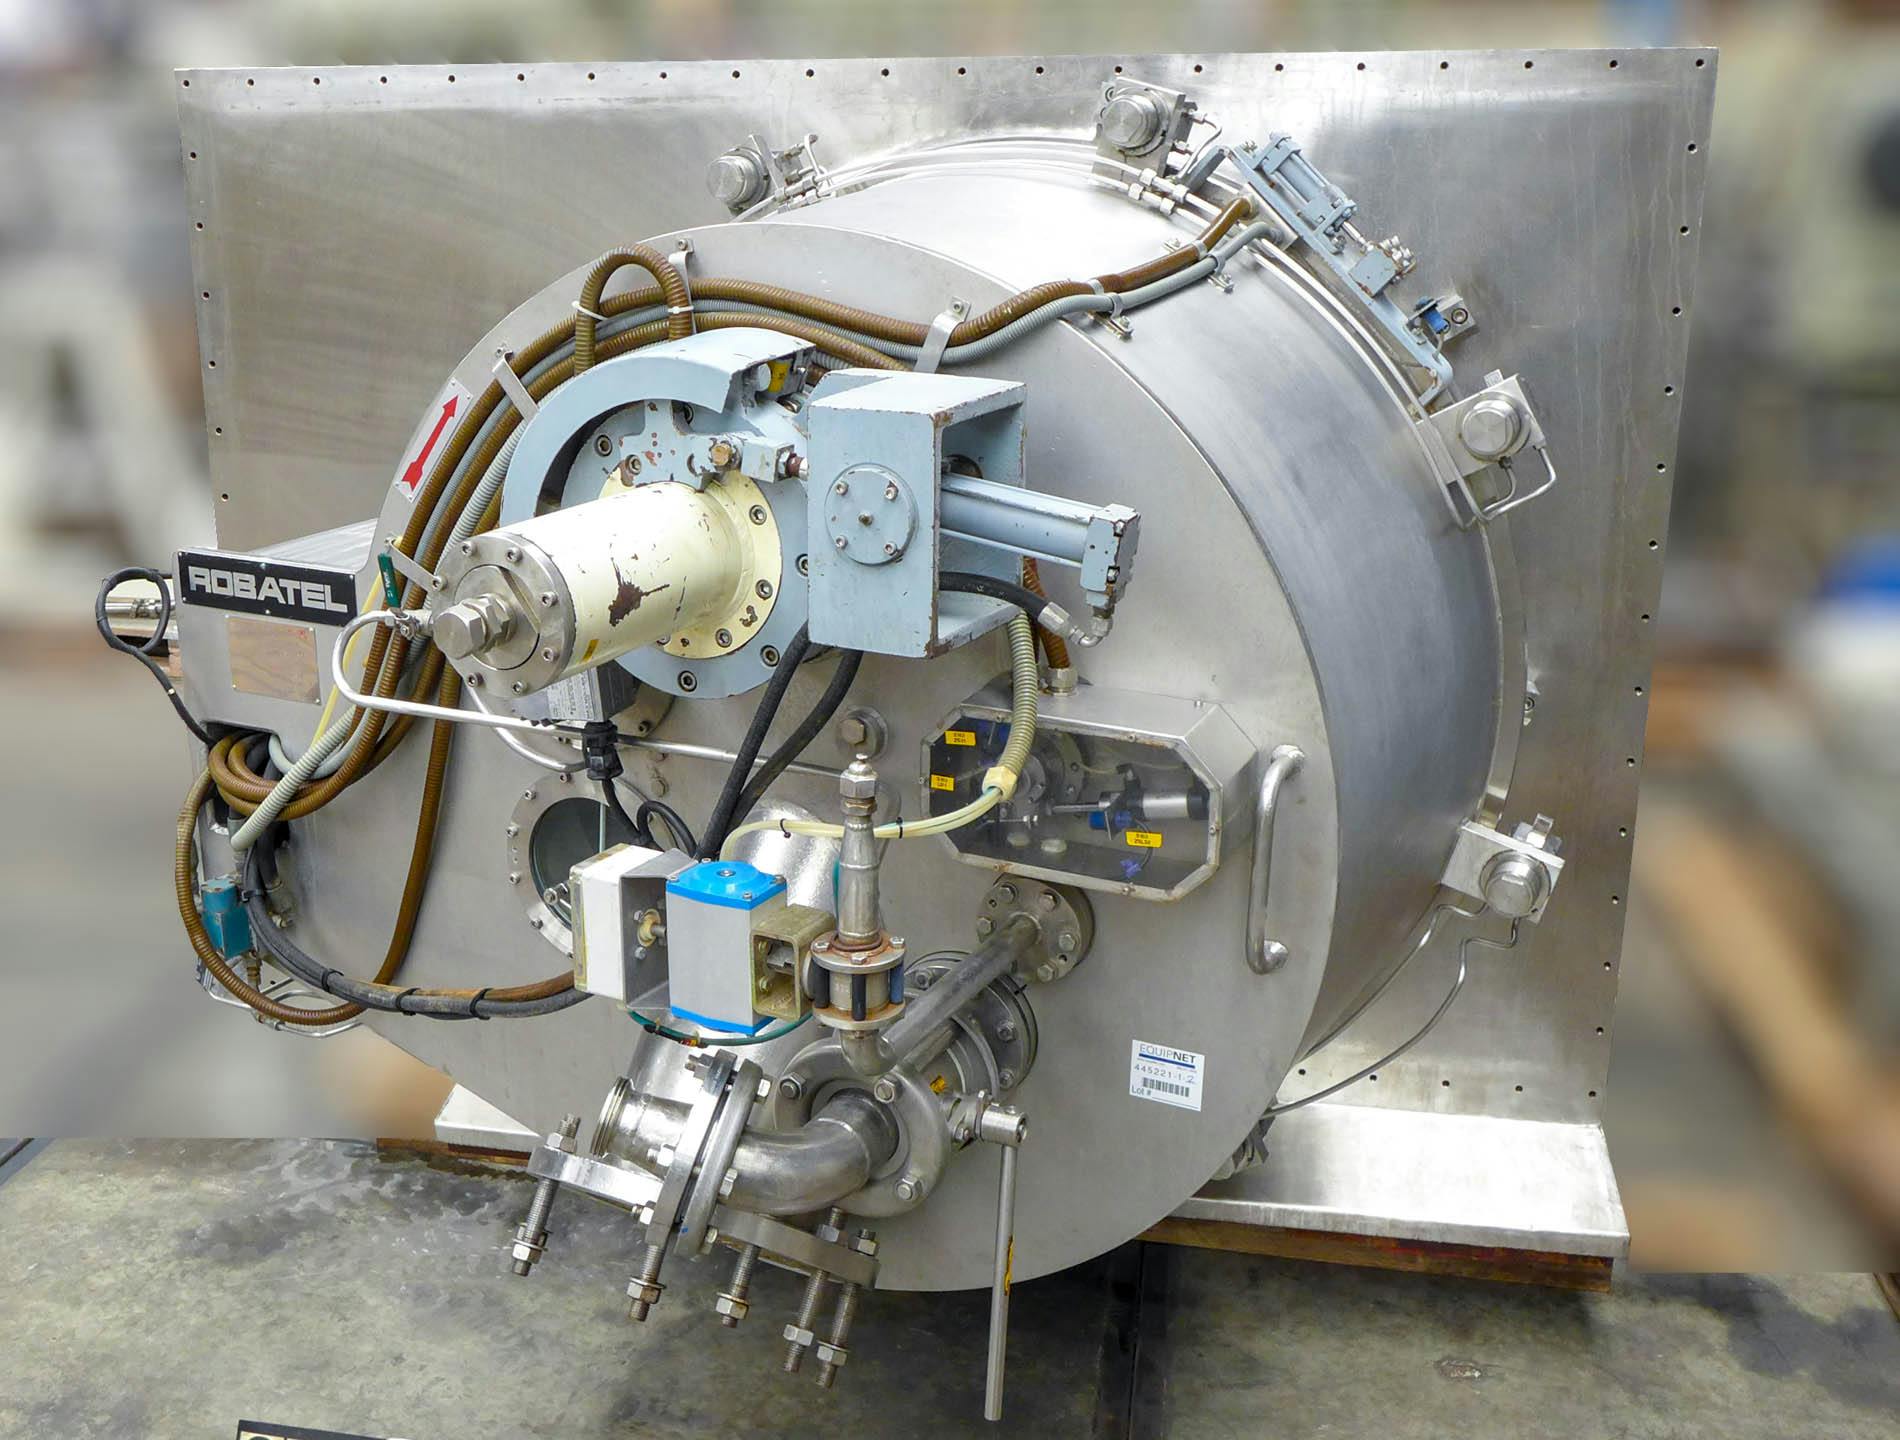 Robatel horizontal peeler centrifuge - Centrífuga de descascar - image 3